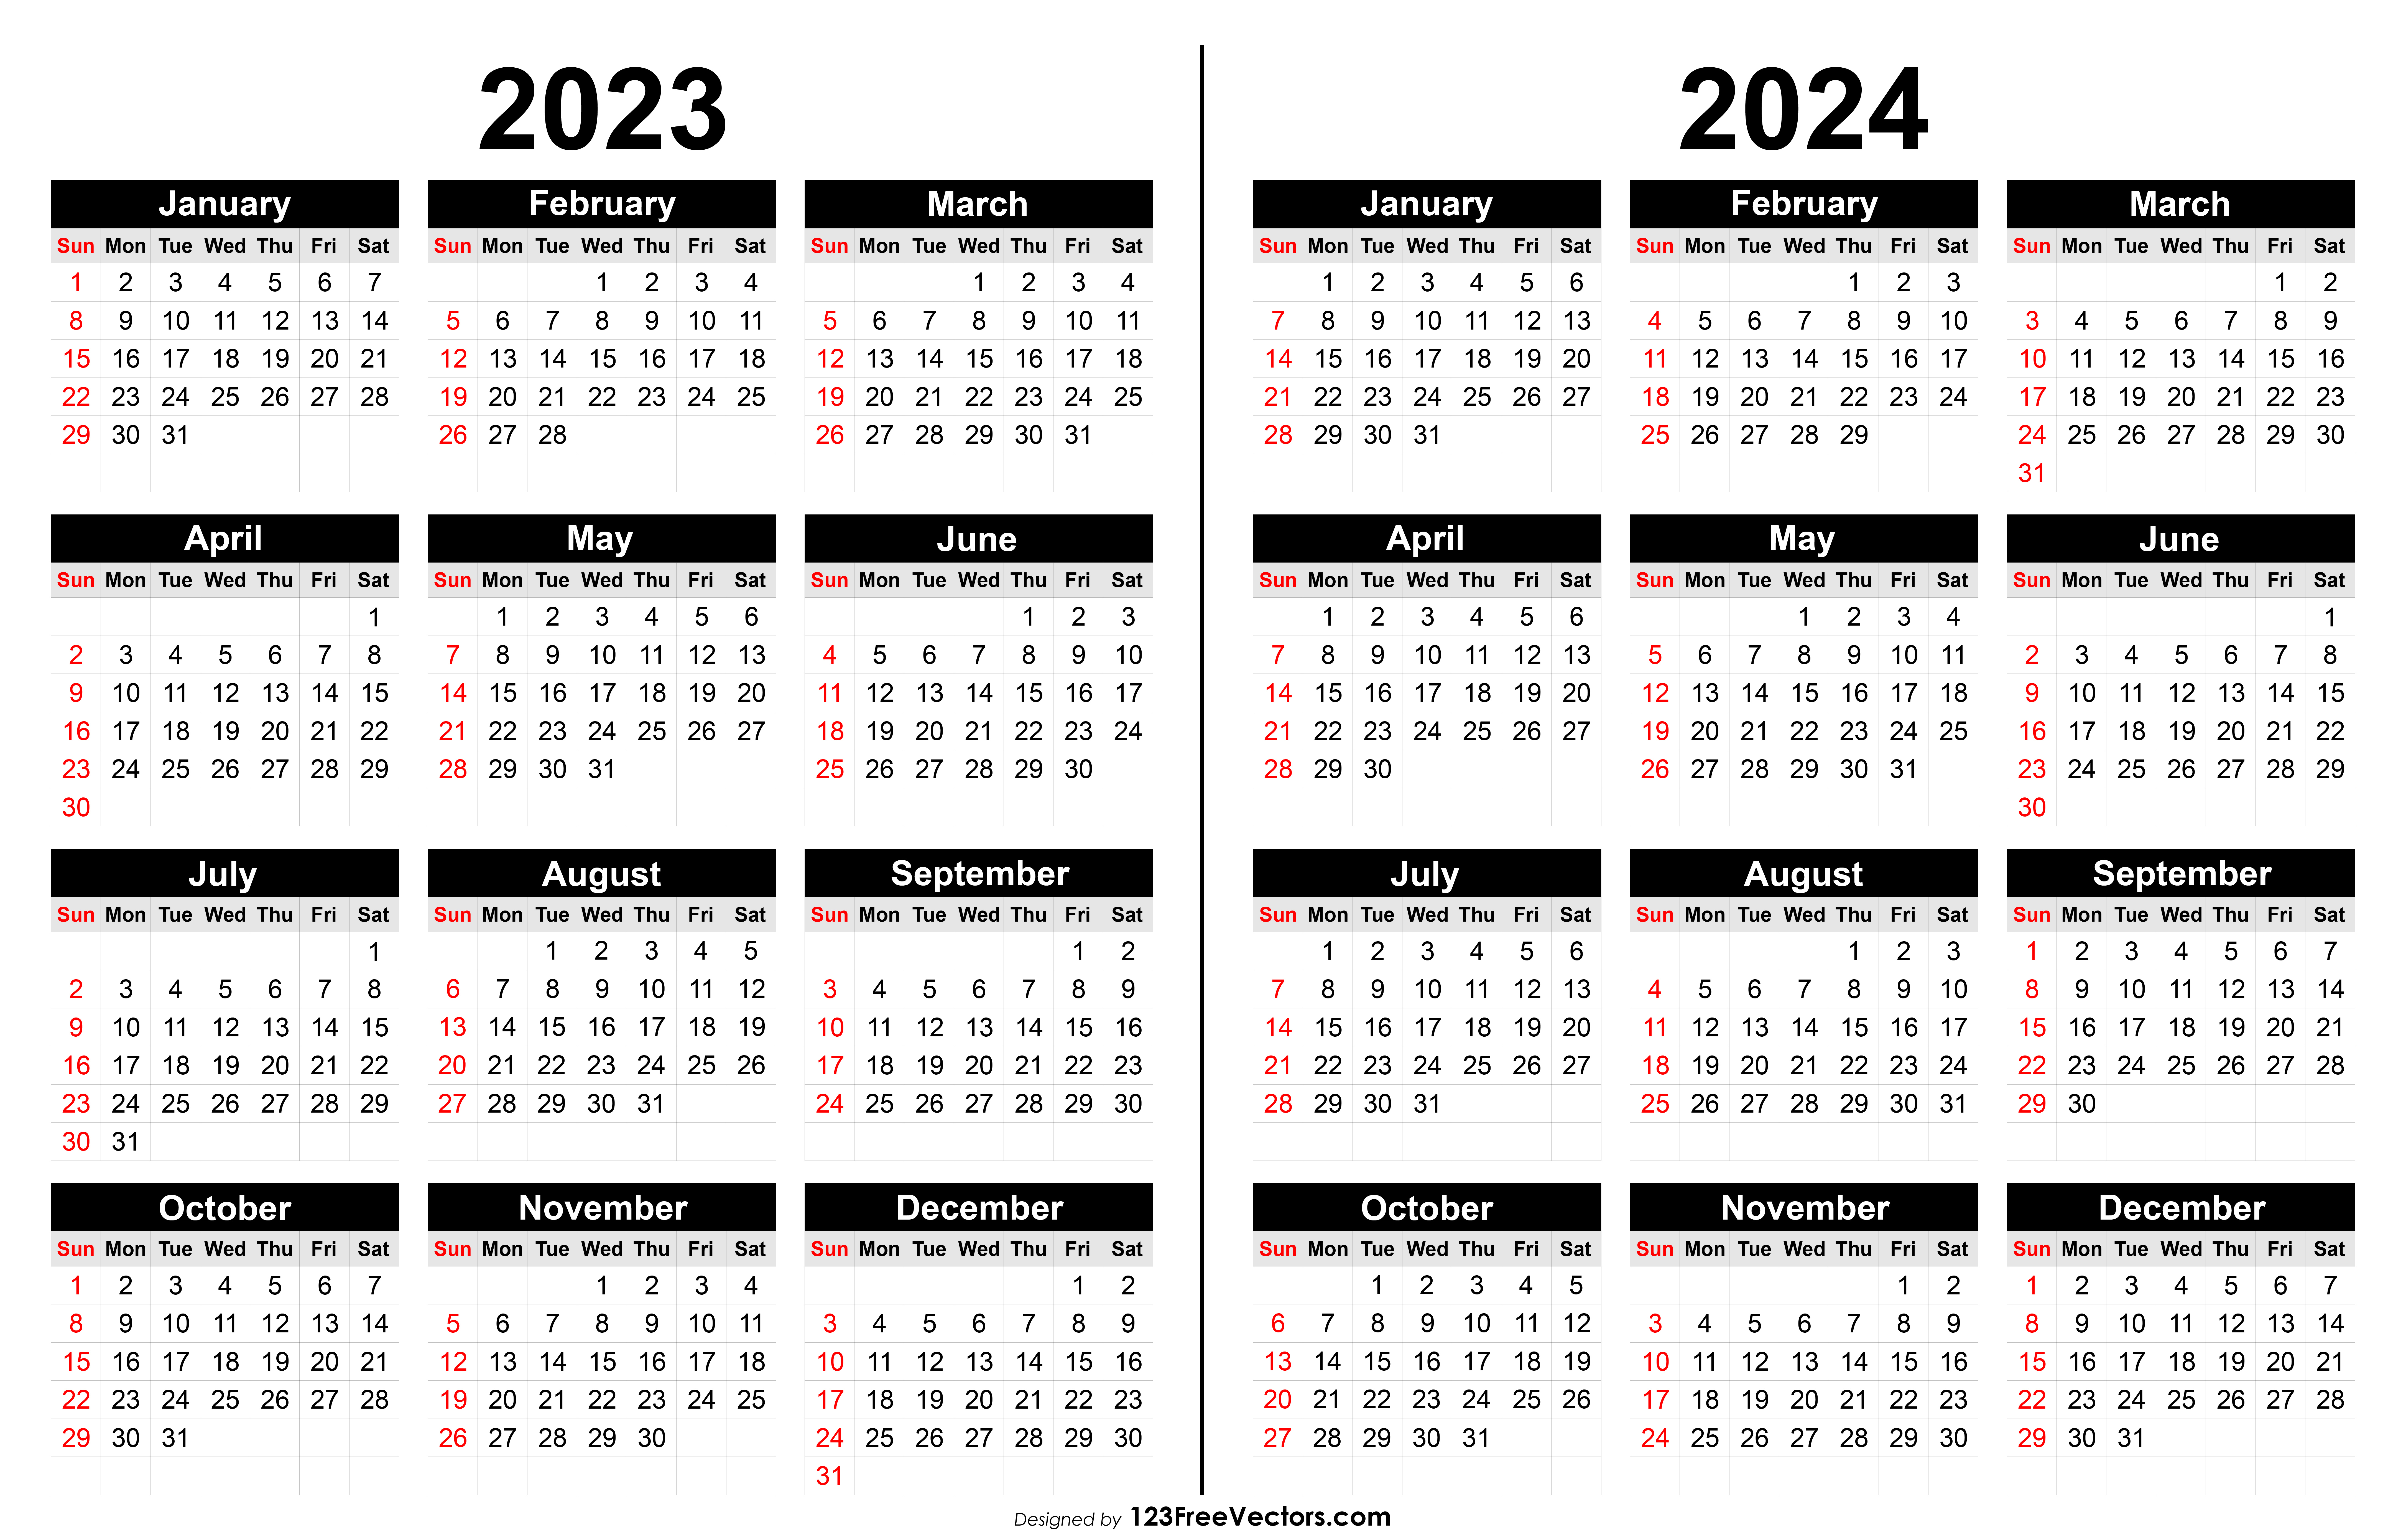 Free 2023 And 2024 Calendar Printable | Printable Calendar 2023 And 2024 Free